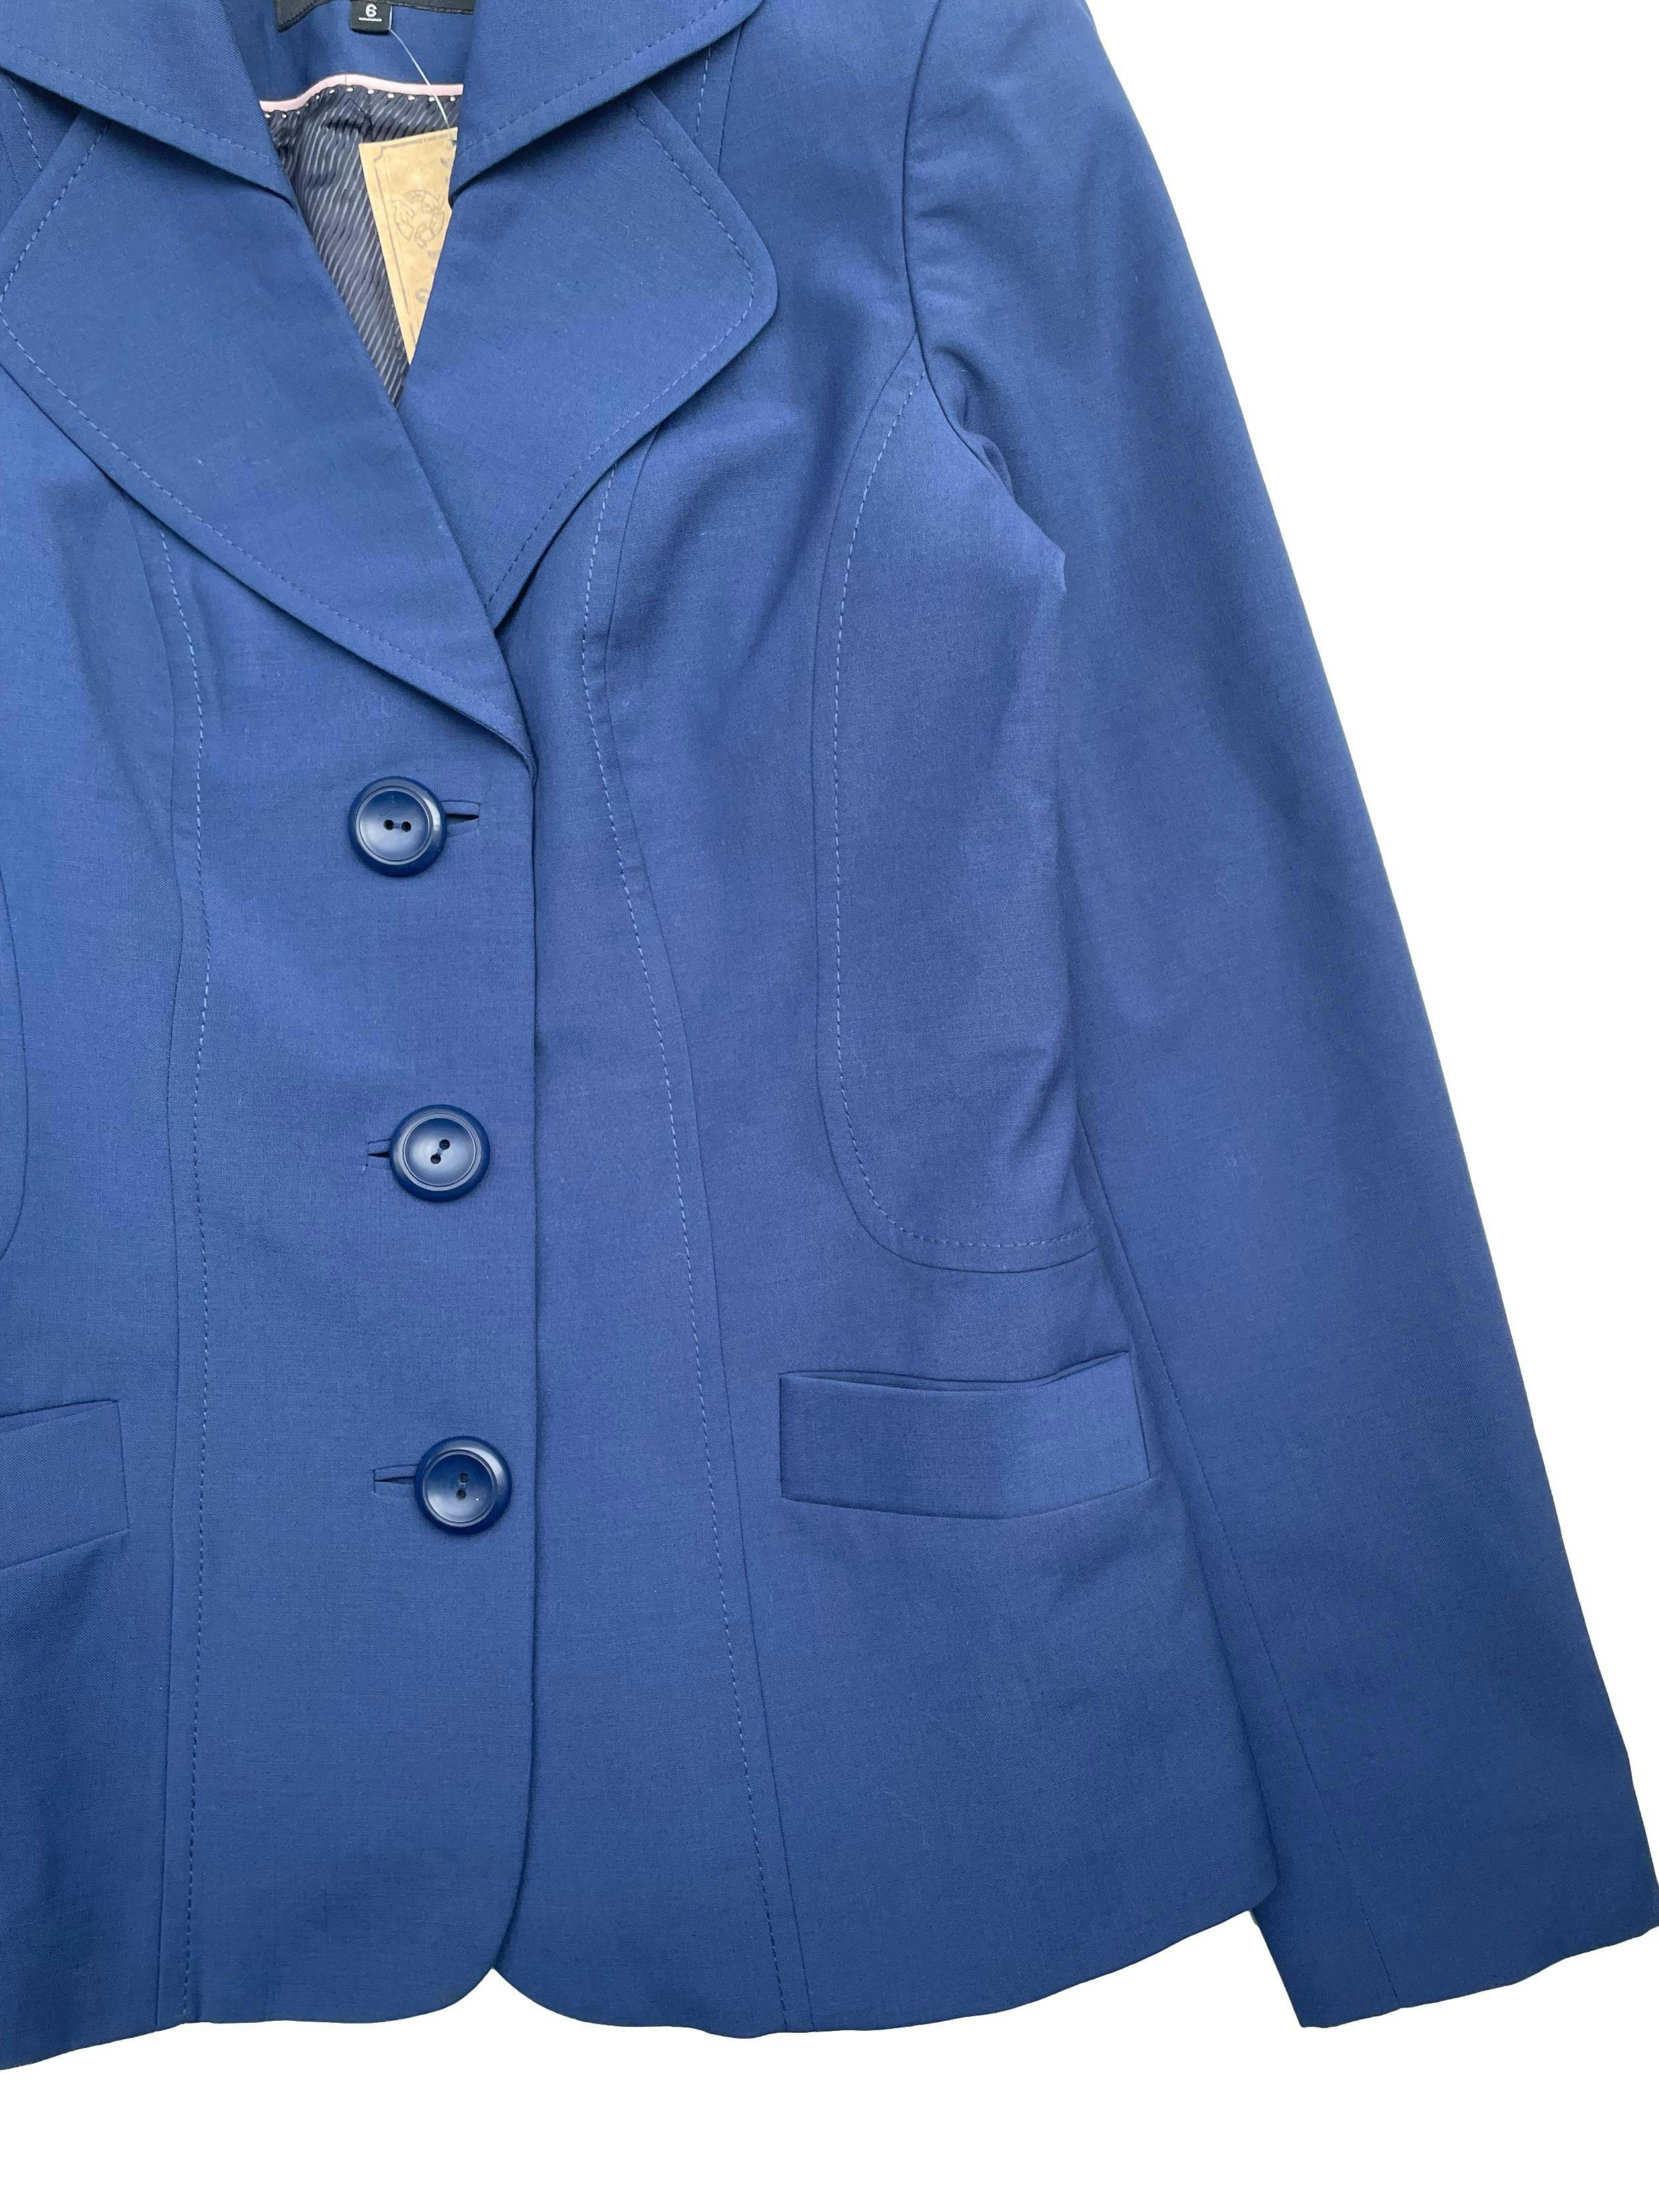 Blazer azul en tela plana 55% lana, corte princesa,con hombreras, forro, botones y bolsillos frontales. Busto 90cm, Largo 60cm.